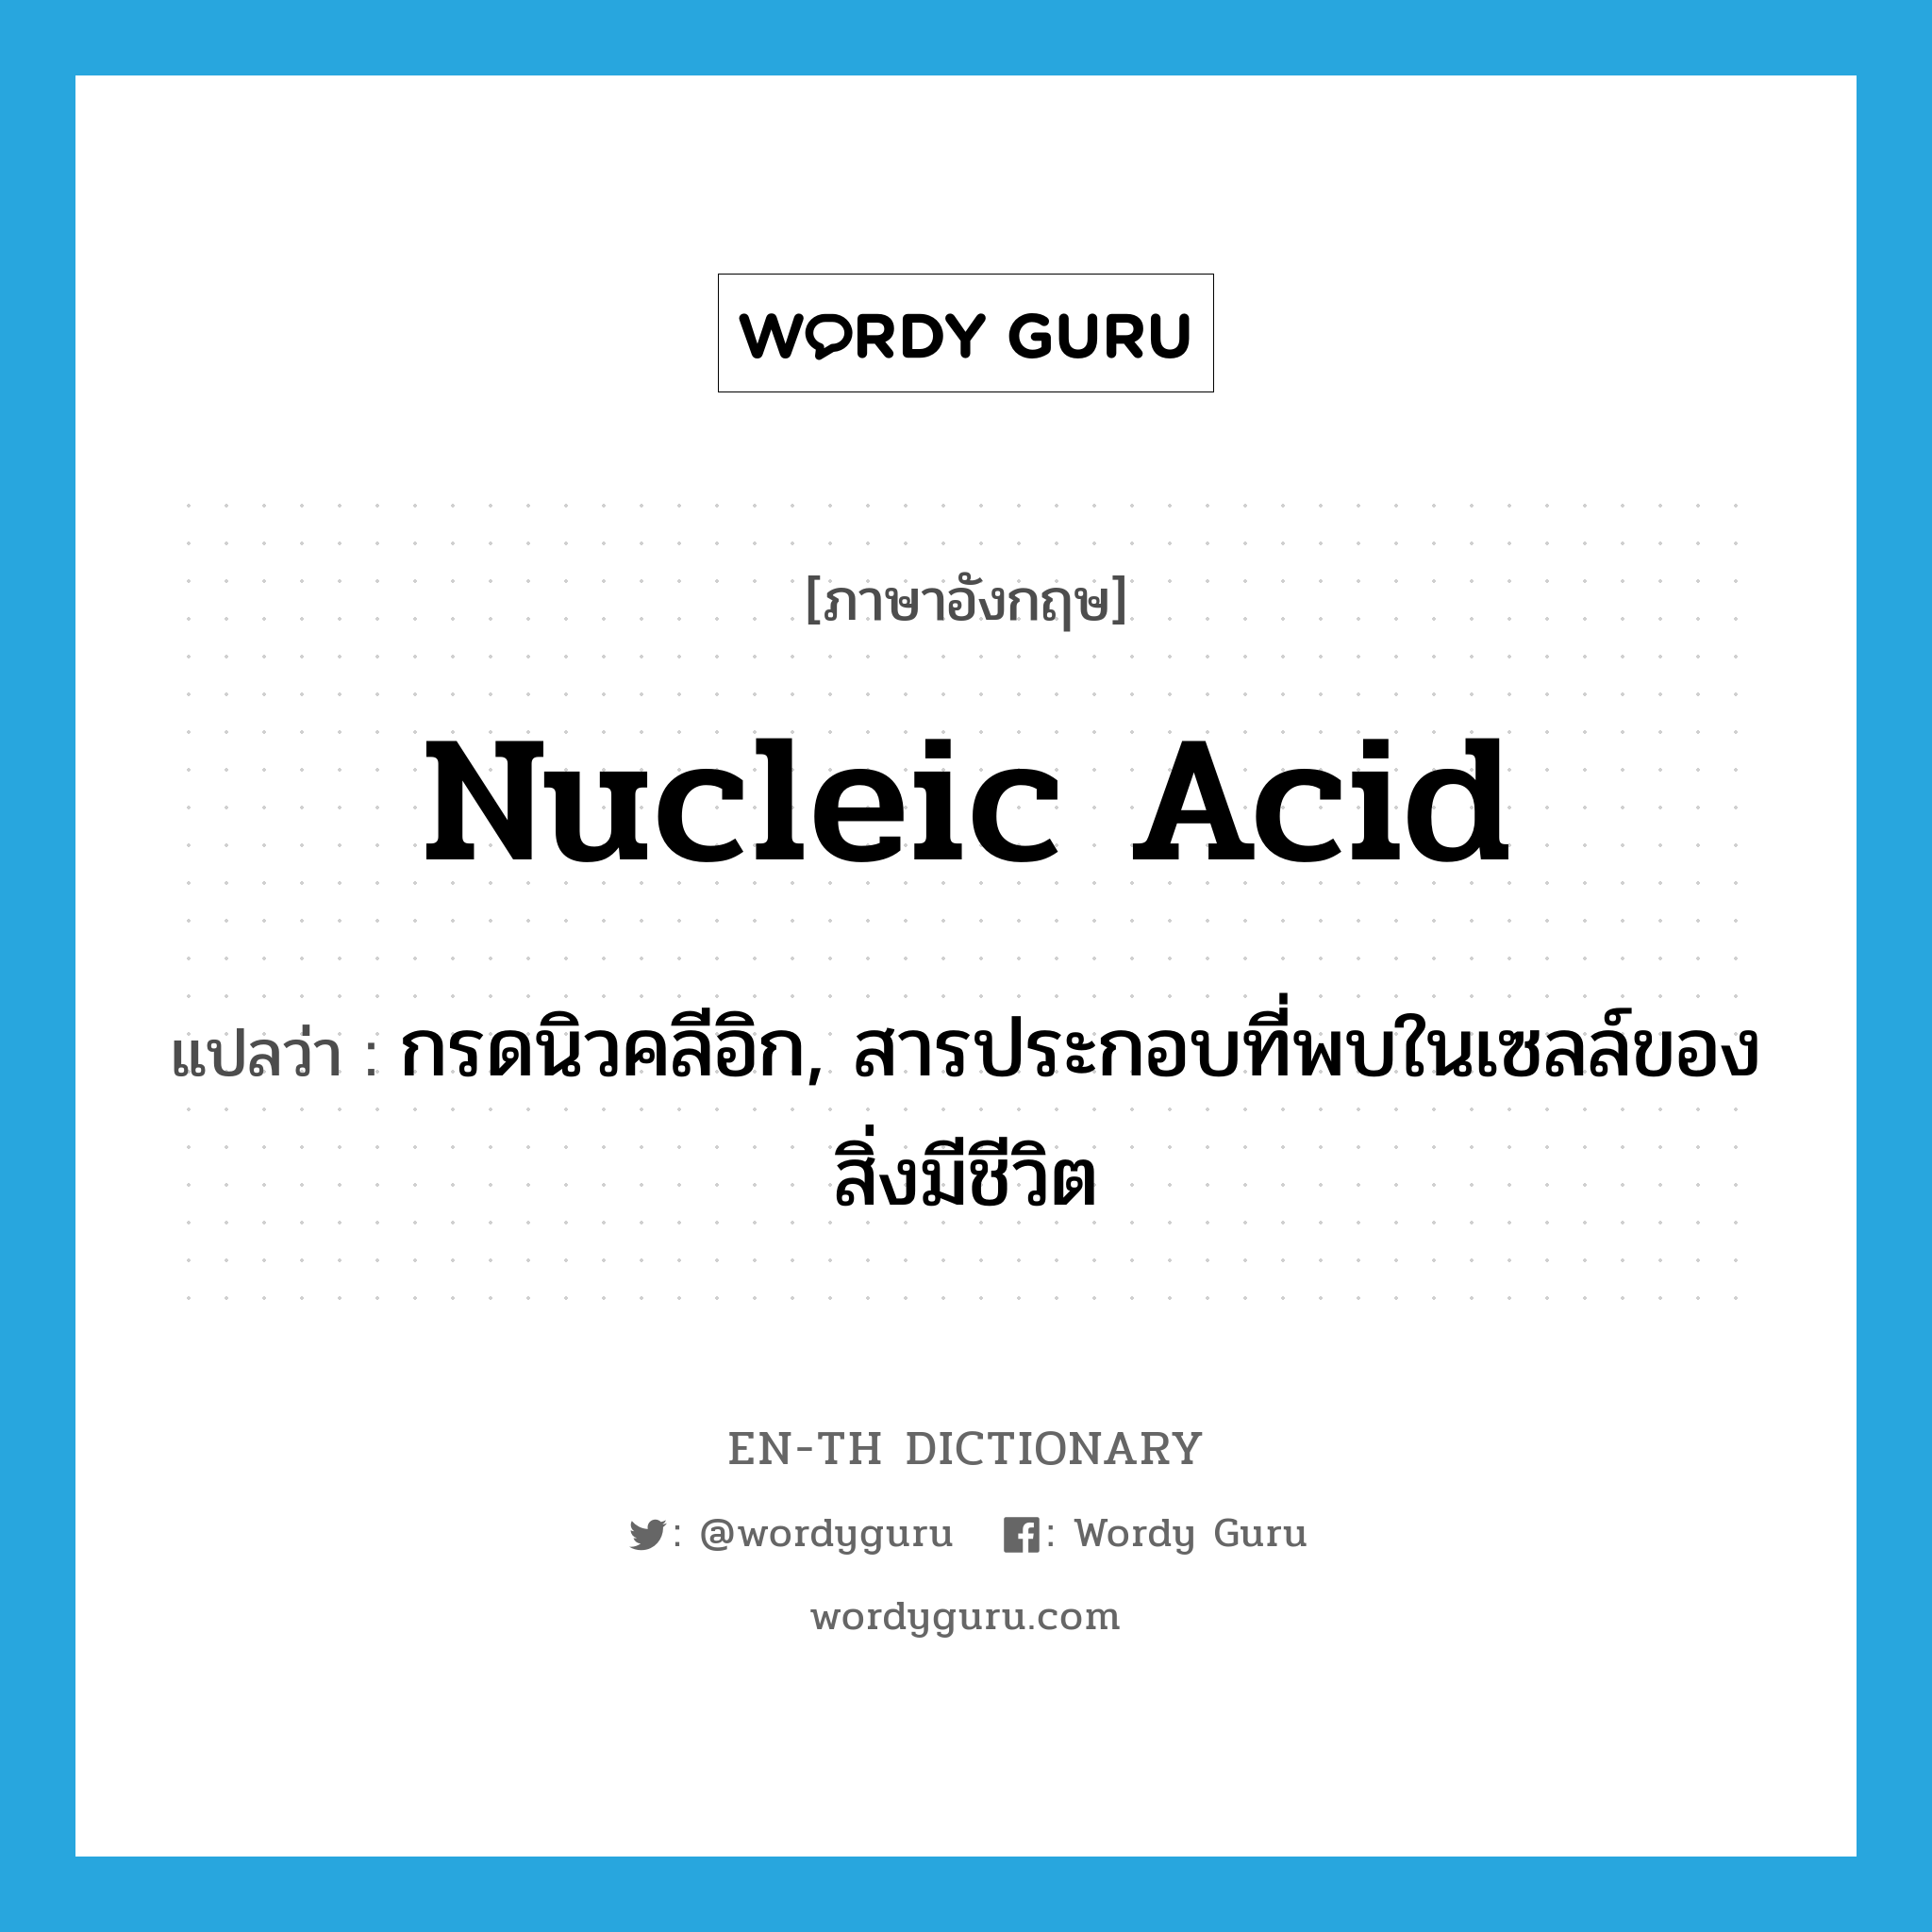 nucleic acid แปลว่า?, คำศัพท์ภาษาอังกฤษ nucleic acid แปลว่า กรดนิวคลีอิก, สารประกอบที่พบในเซลล์ของสิ่งมีชีวิต ประเภท N หมวด N